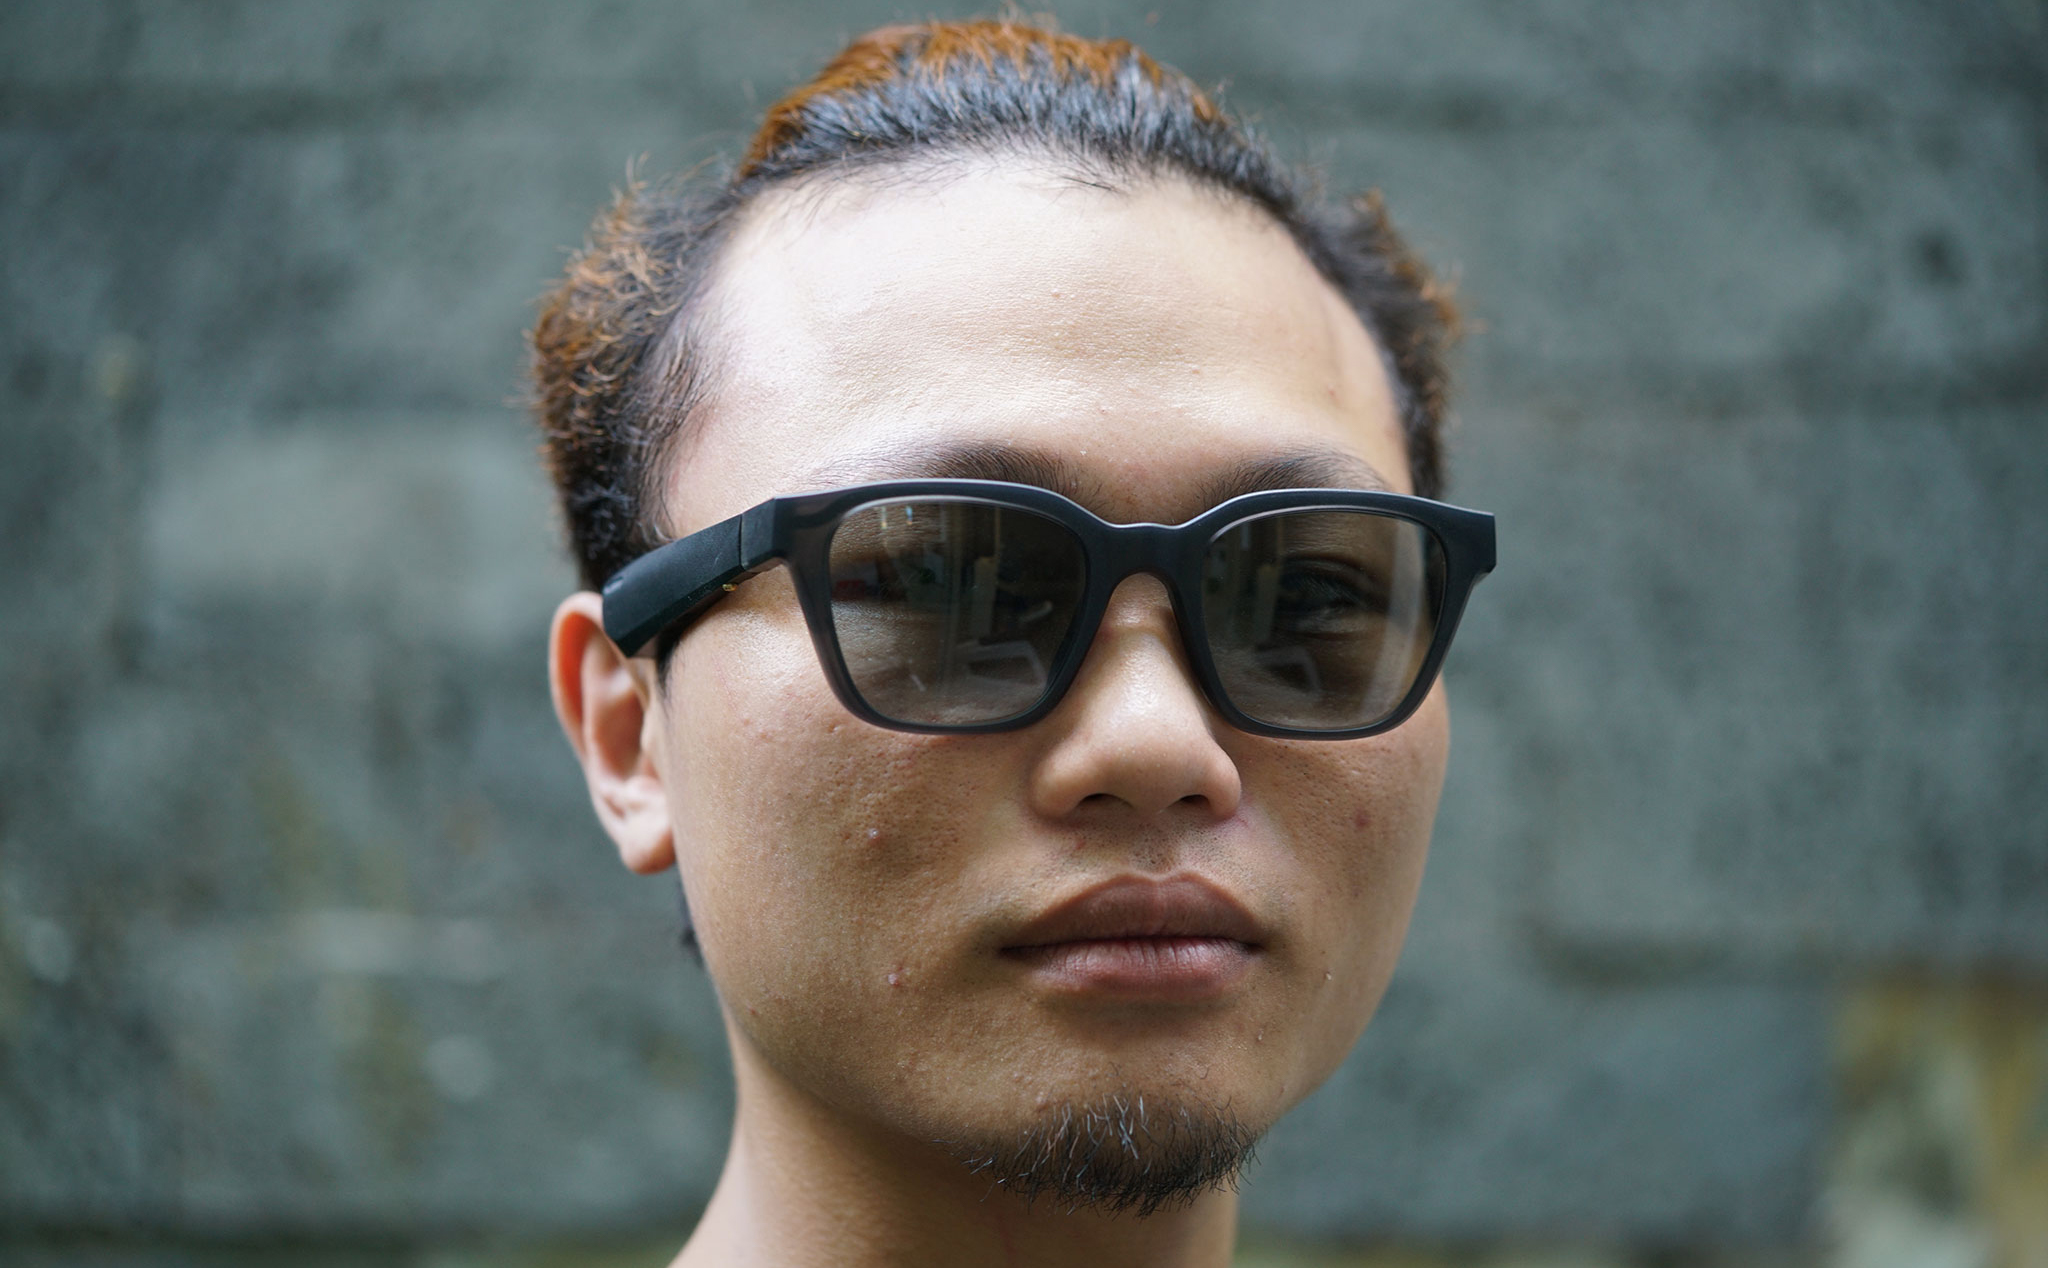 Đánh giá Bose Frames: chiếc kính với khả năng chơi nhạc độc đáo, Bose AR chưa làm được nhiều việc